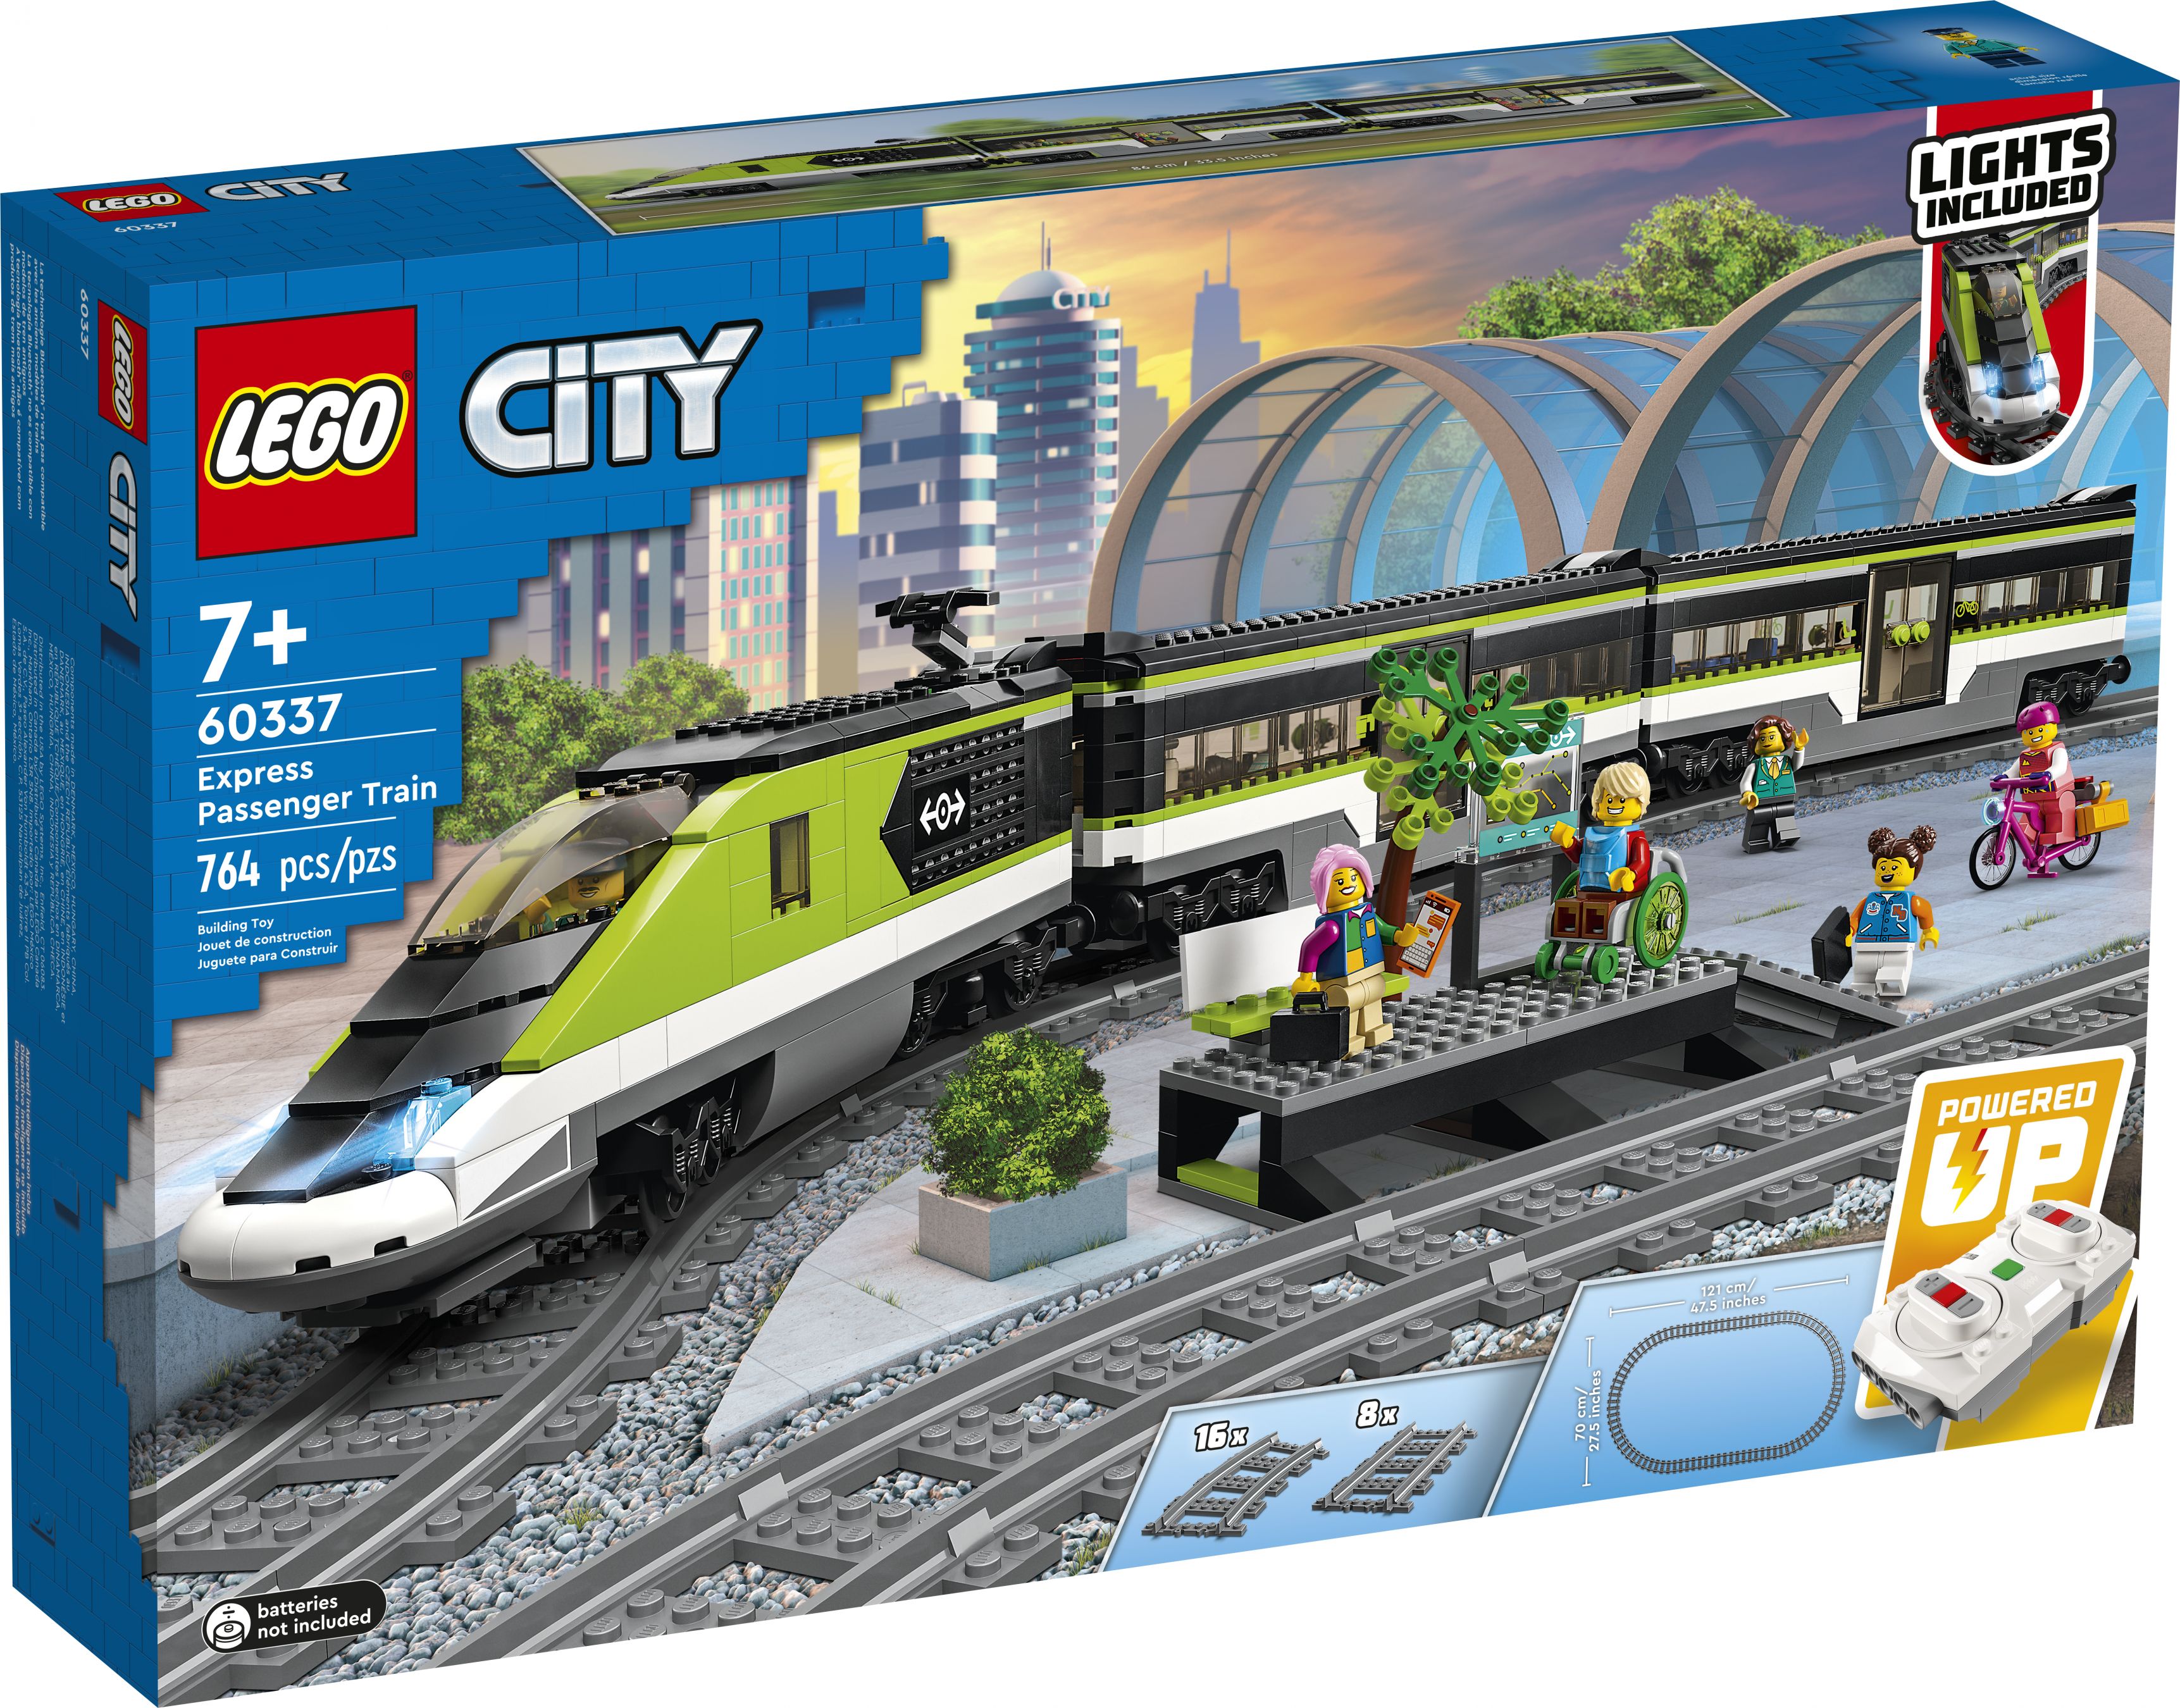 LEGO City 60337 Personen-Schnellzug LEGO_60337_Box1_v39.jpg